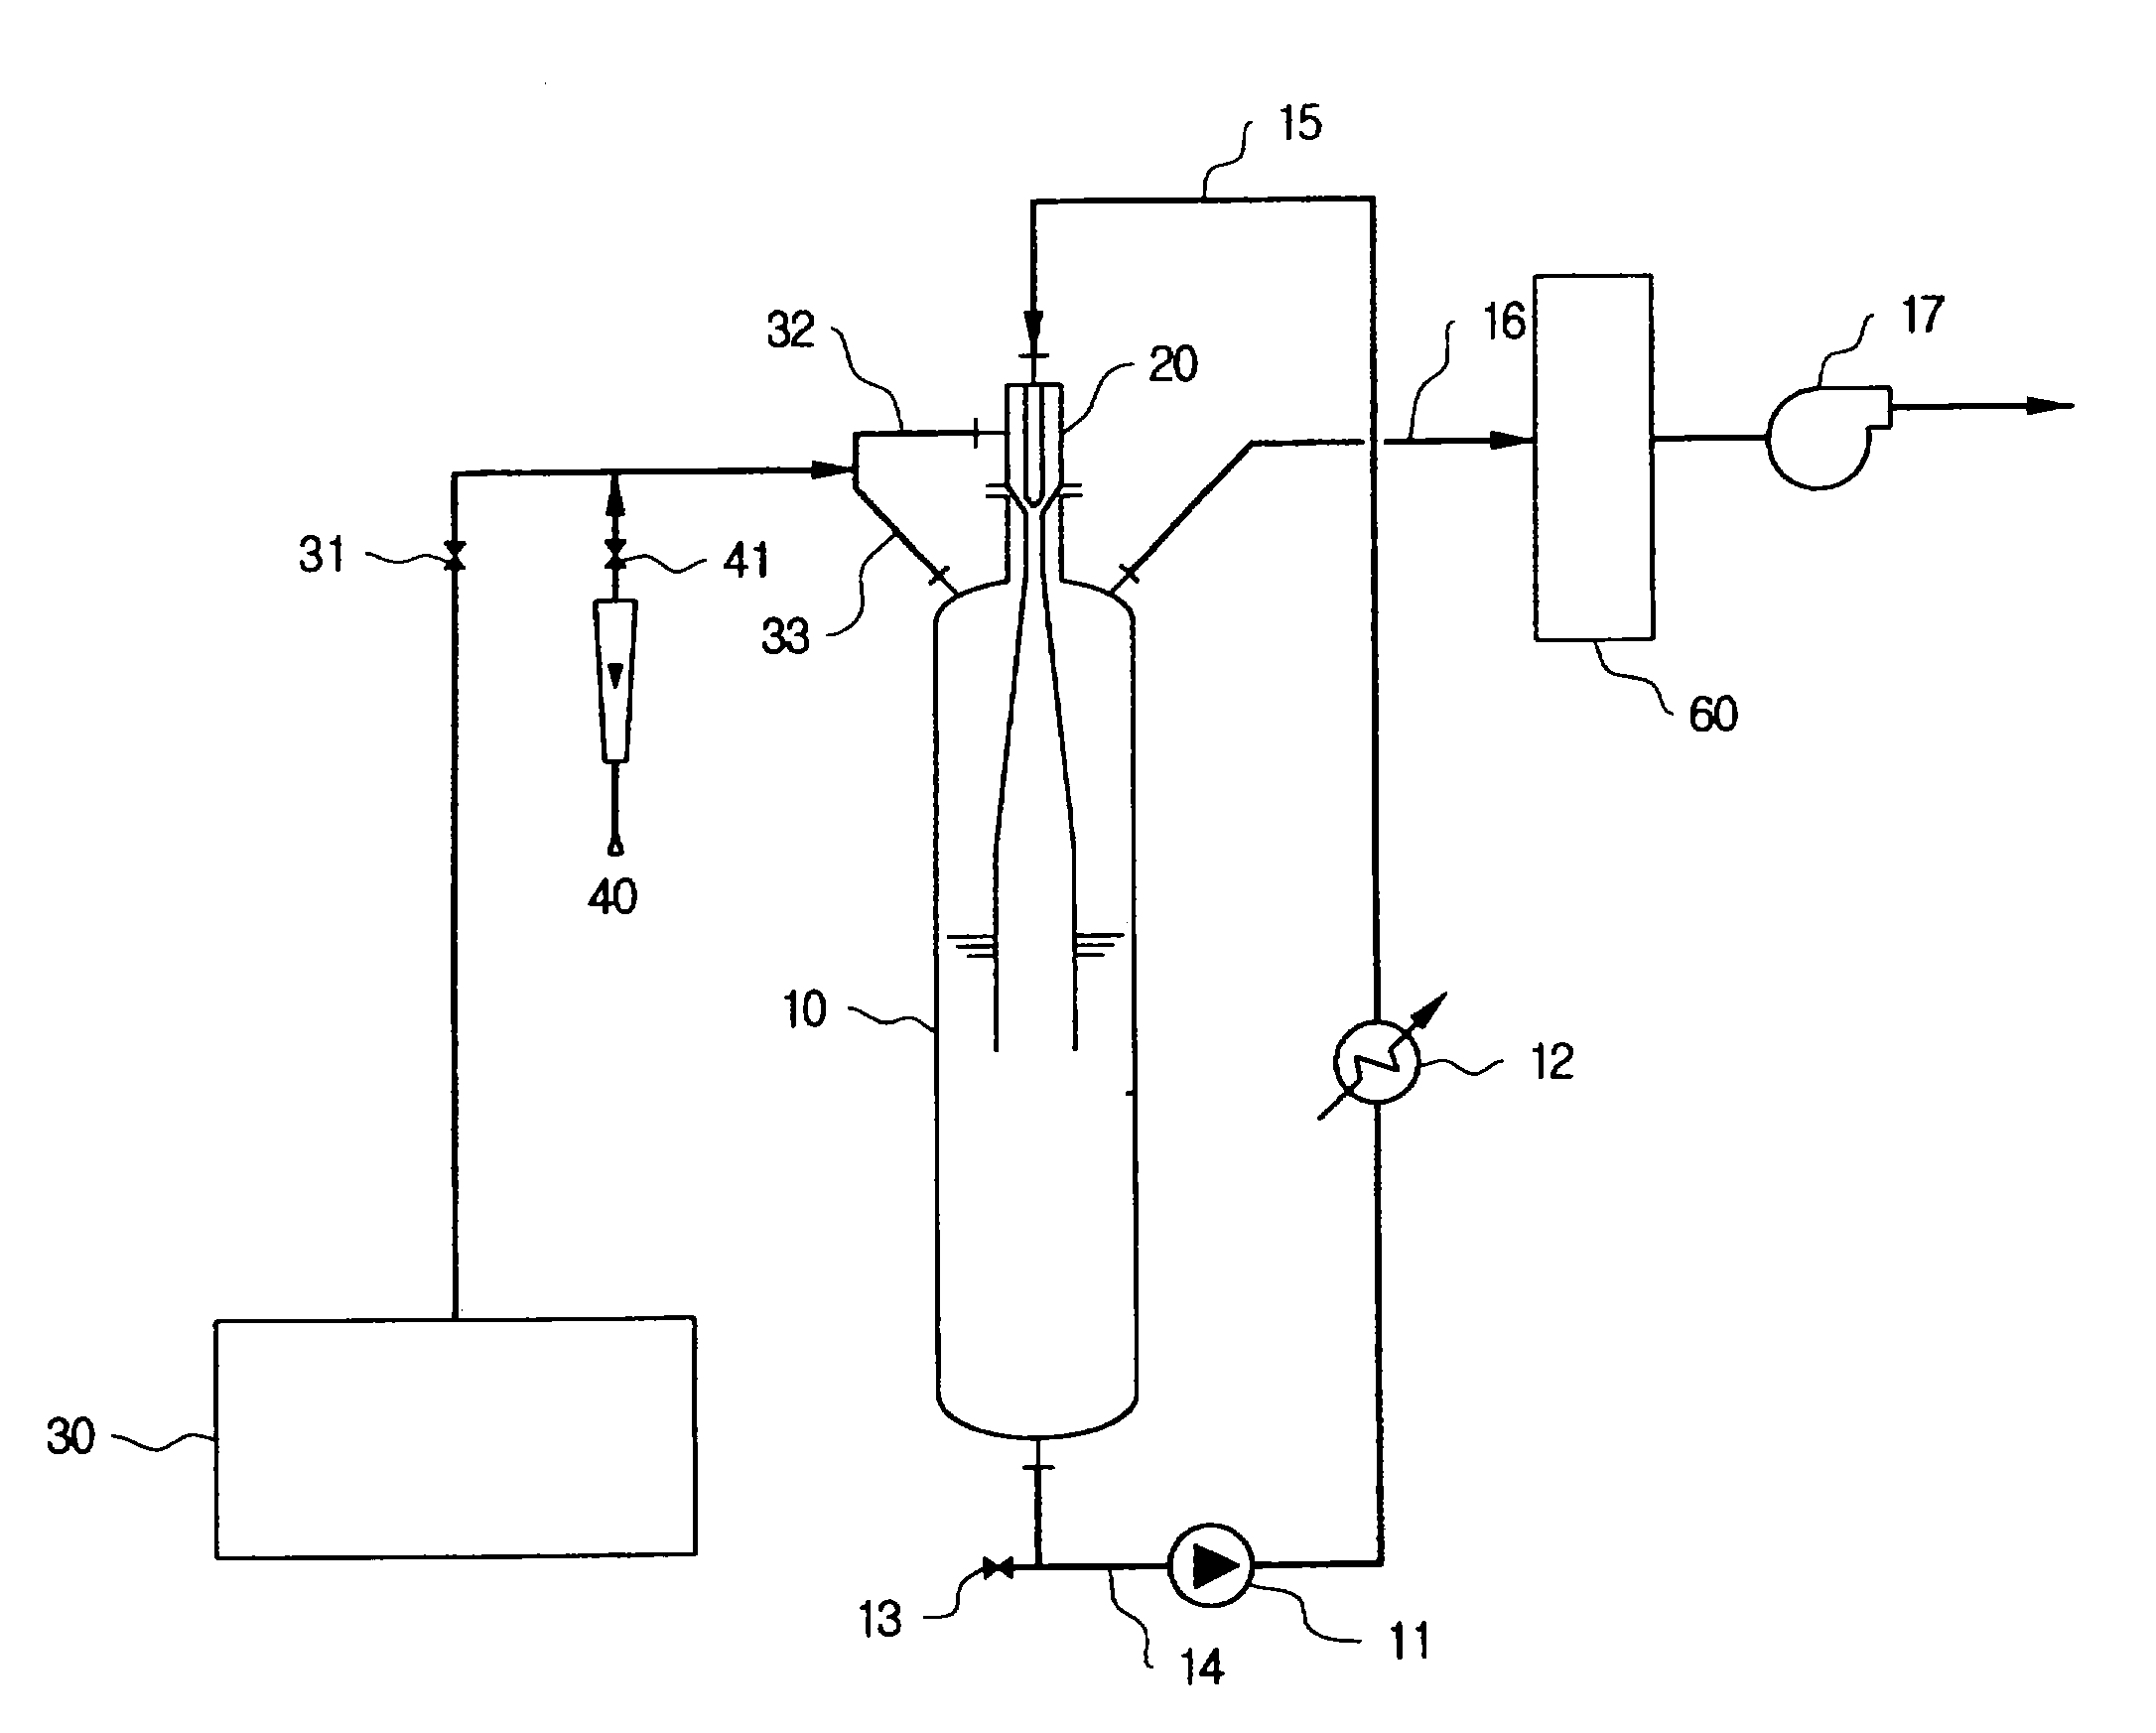 Method for producing nitrogen trifluoride using jet-loop reactors